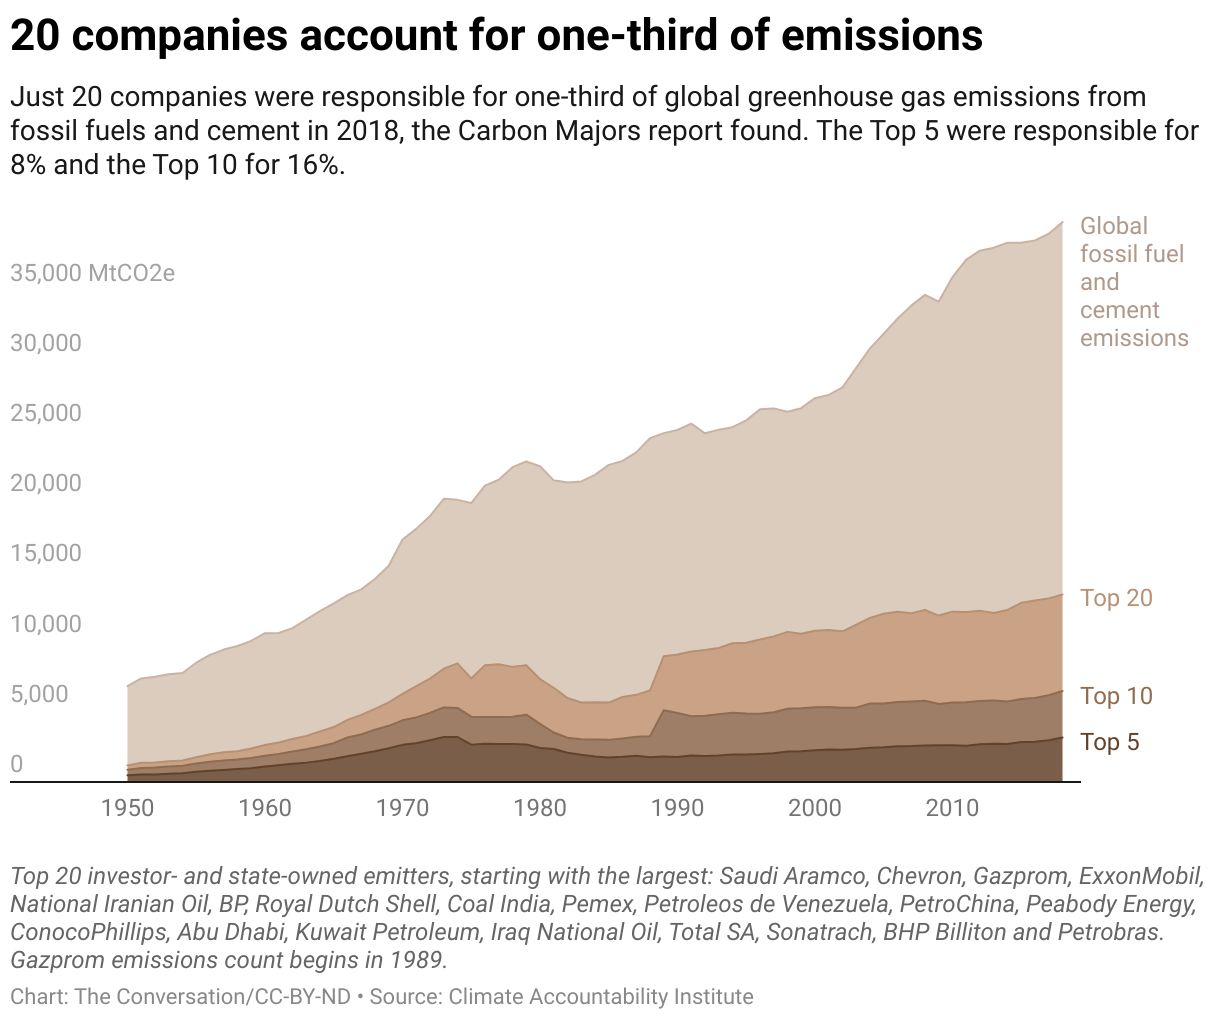 碳大戶報告發現，過去半世紀中，僅20家公司就產出超過三分之一的全球化石燃料及水泥碳排放量。